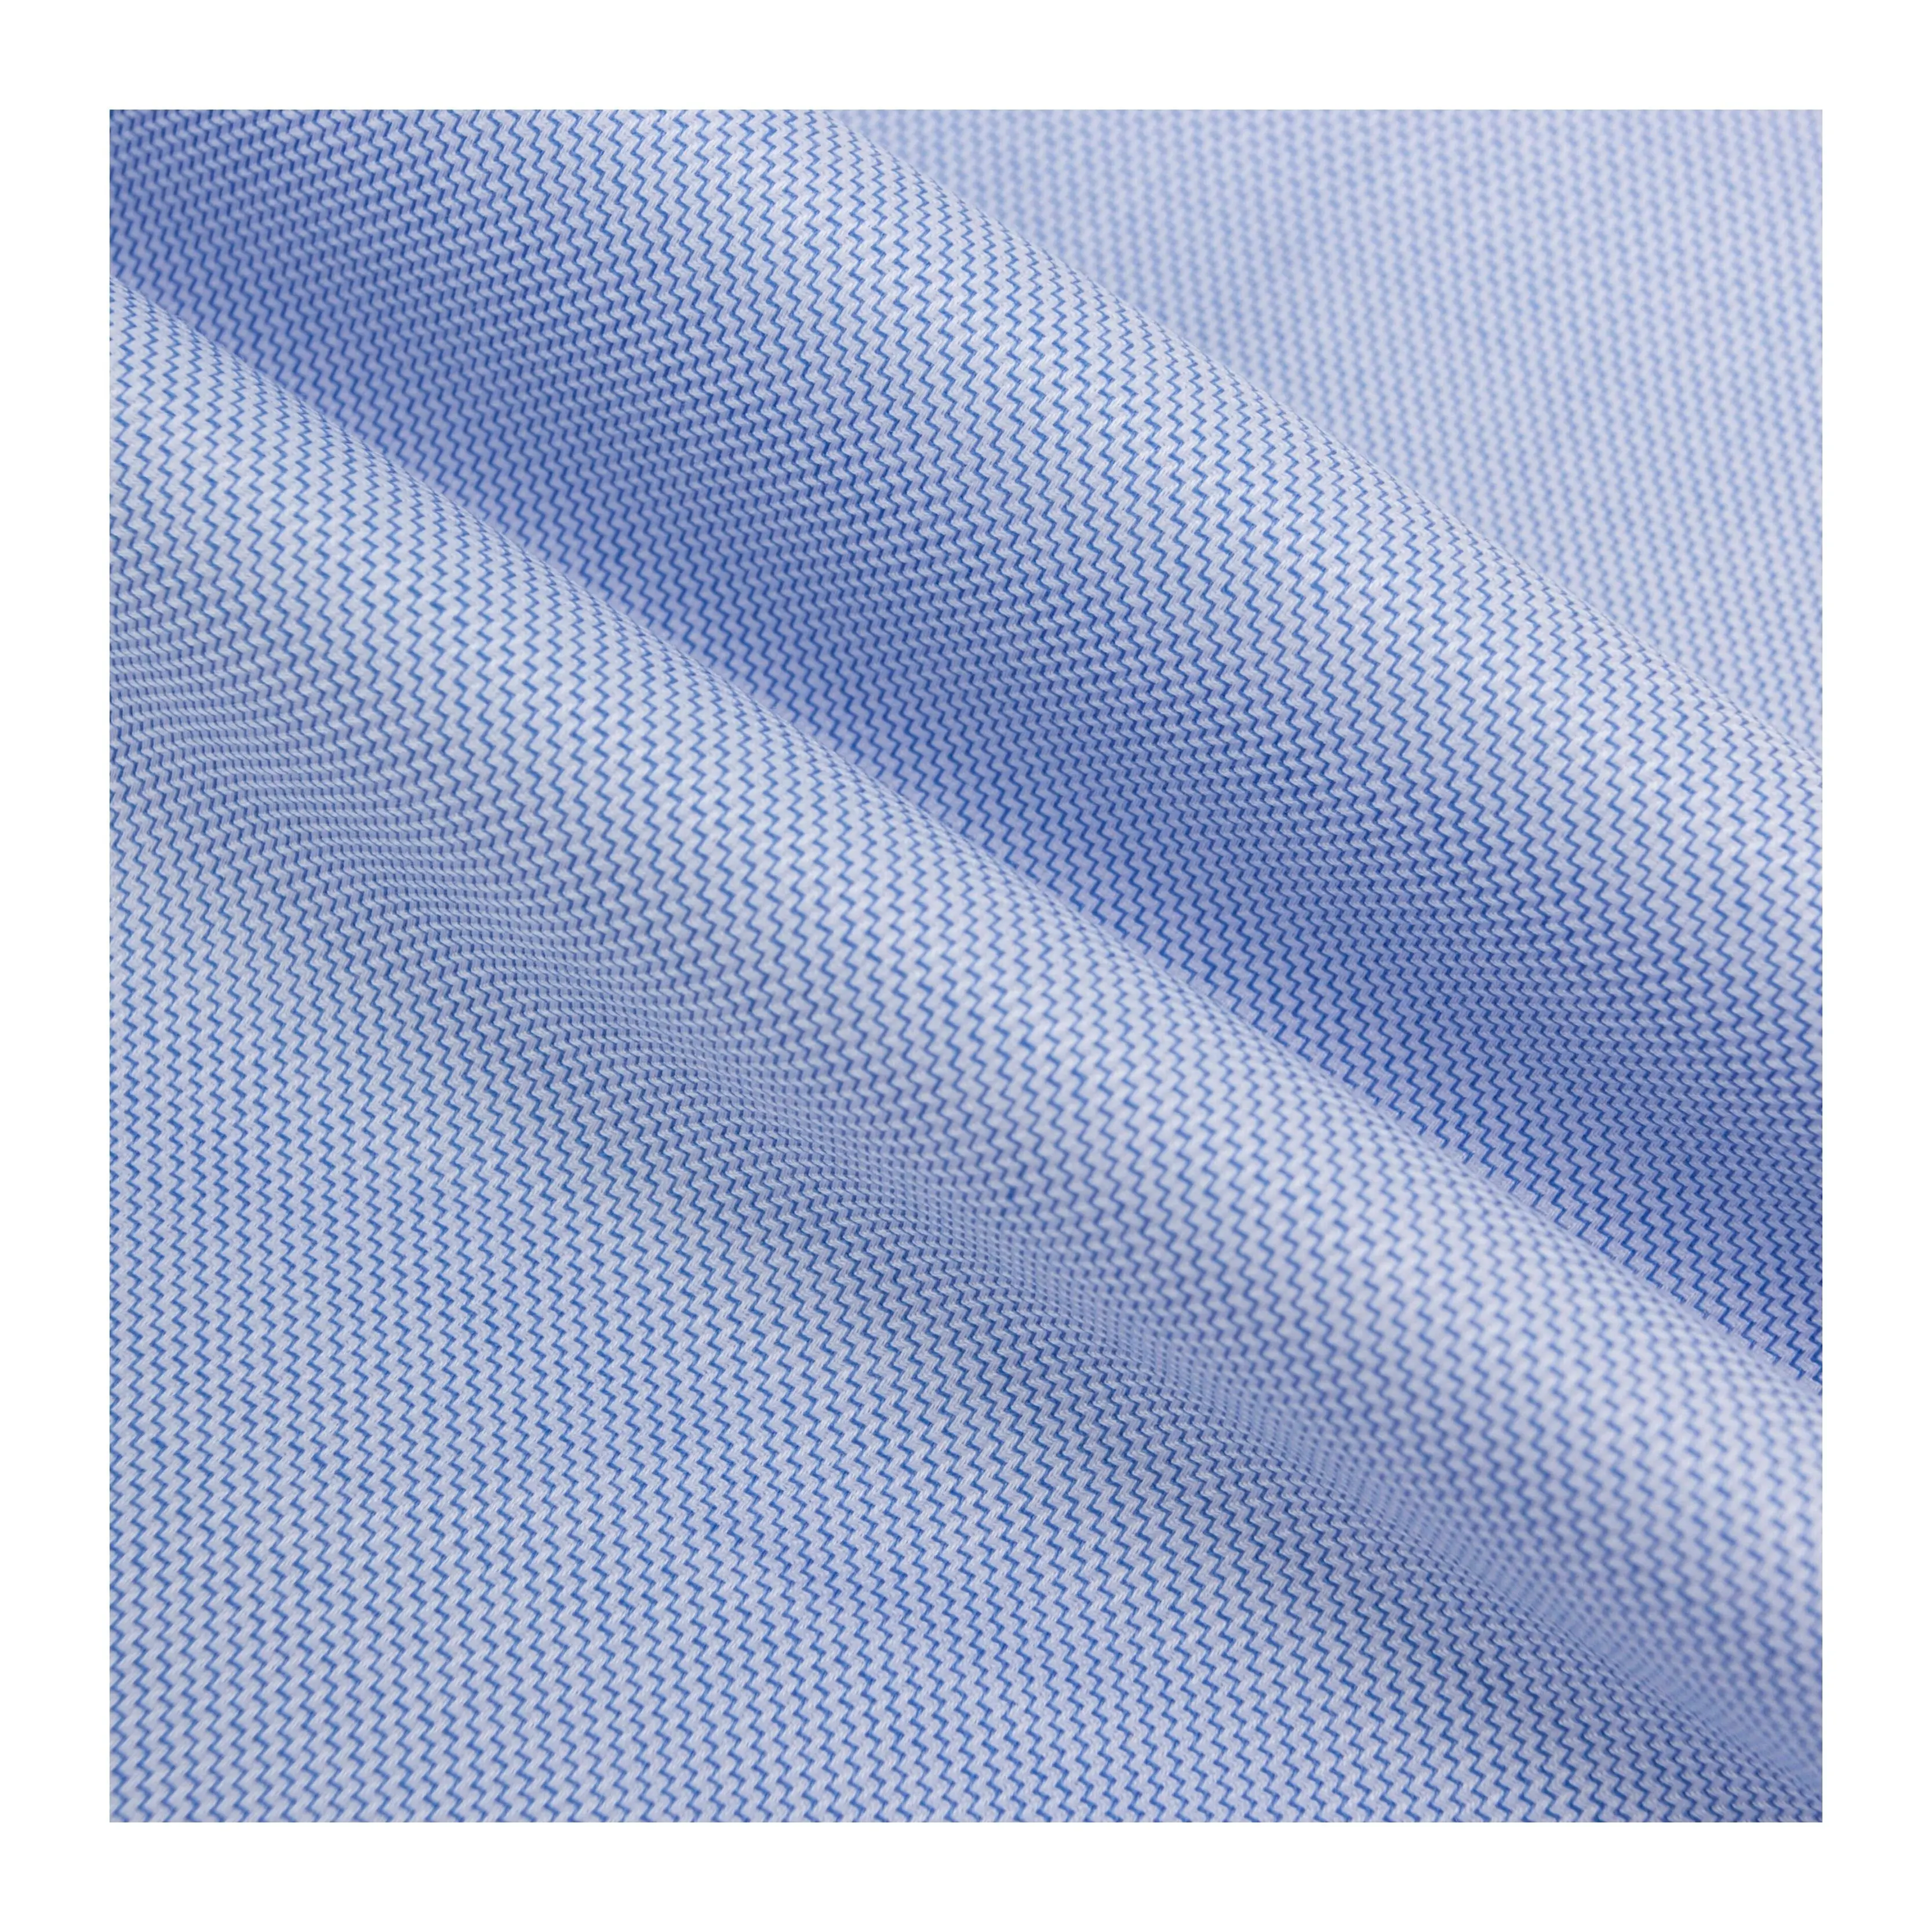 94 çin tekstil anti-kırışıklık mavi ve beyaz sıvı amonyak dalga 100 pamuk dokuma gömlek kumaşı lüks giysiler için